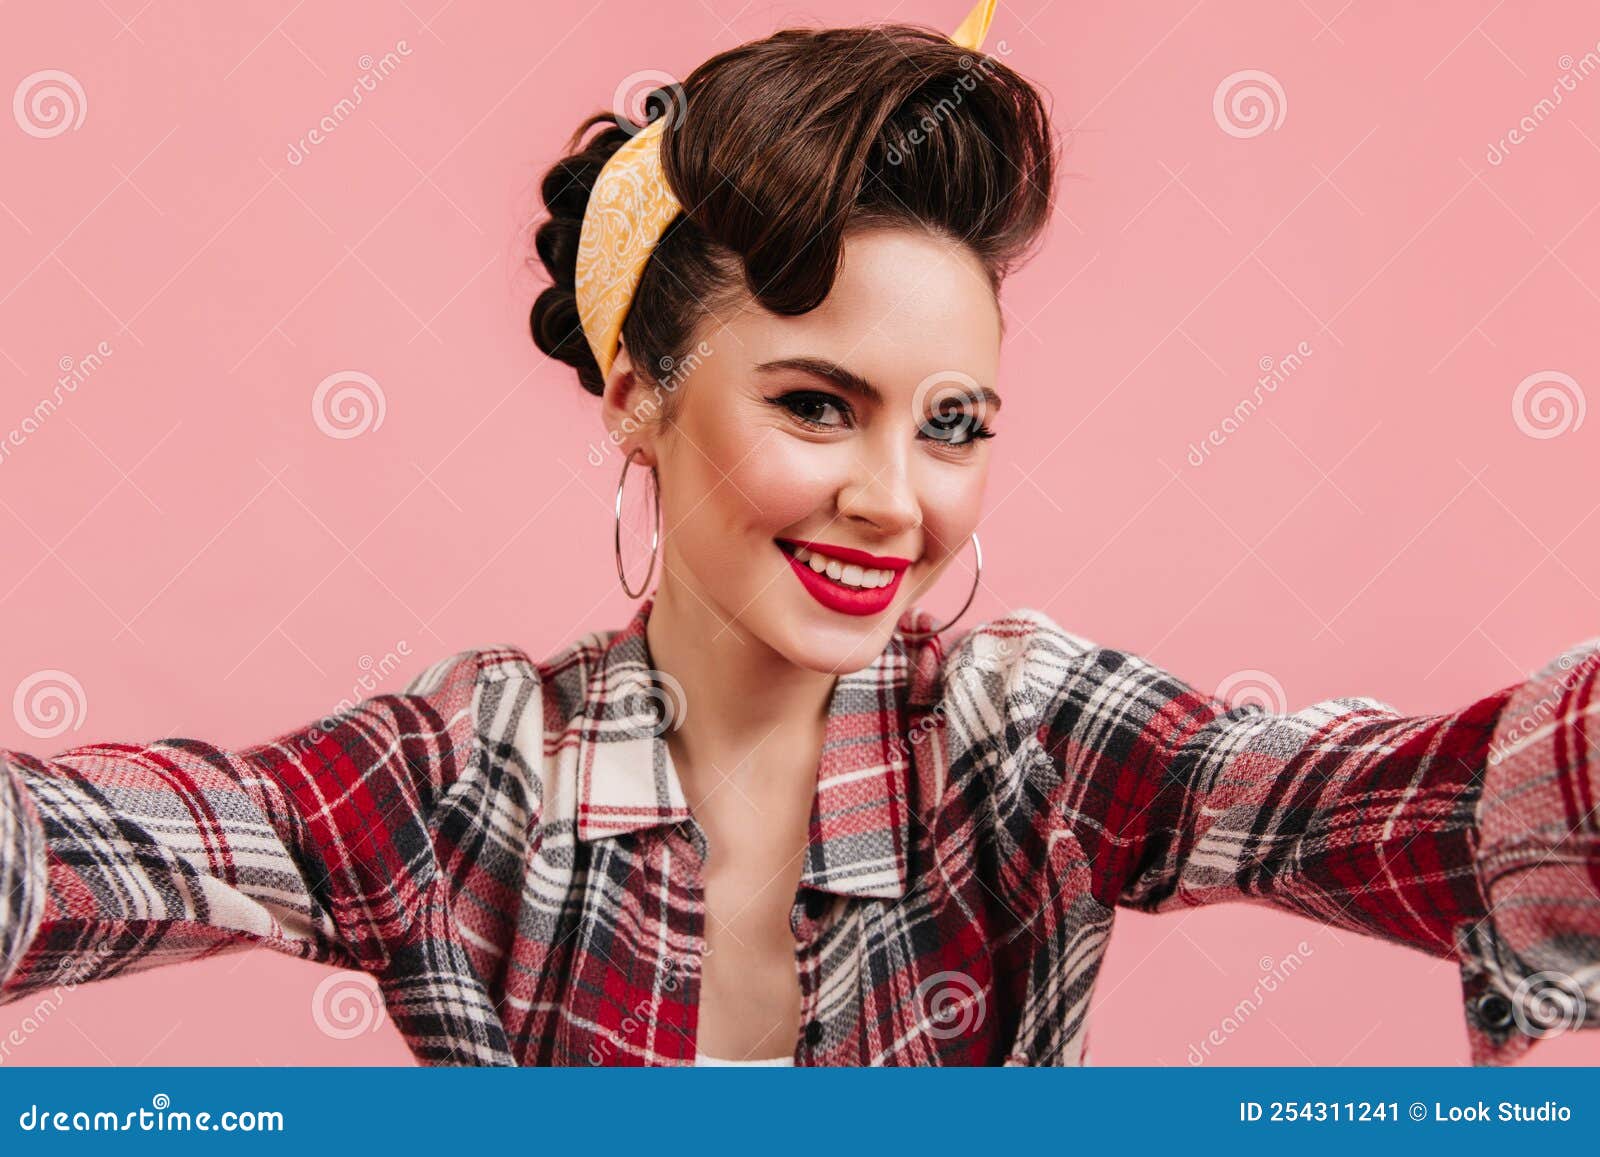 Encantadora Mujer Joven Con Camisa De Cuadros Sonriendo Con Fondo Rosa. Chica De Pinup Emocional Tomando Selfie Imagen de archivo - Imagen de feliz, 254311241